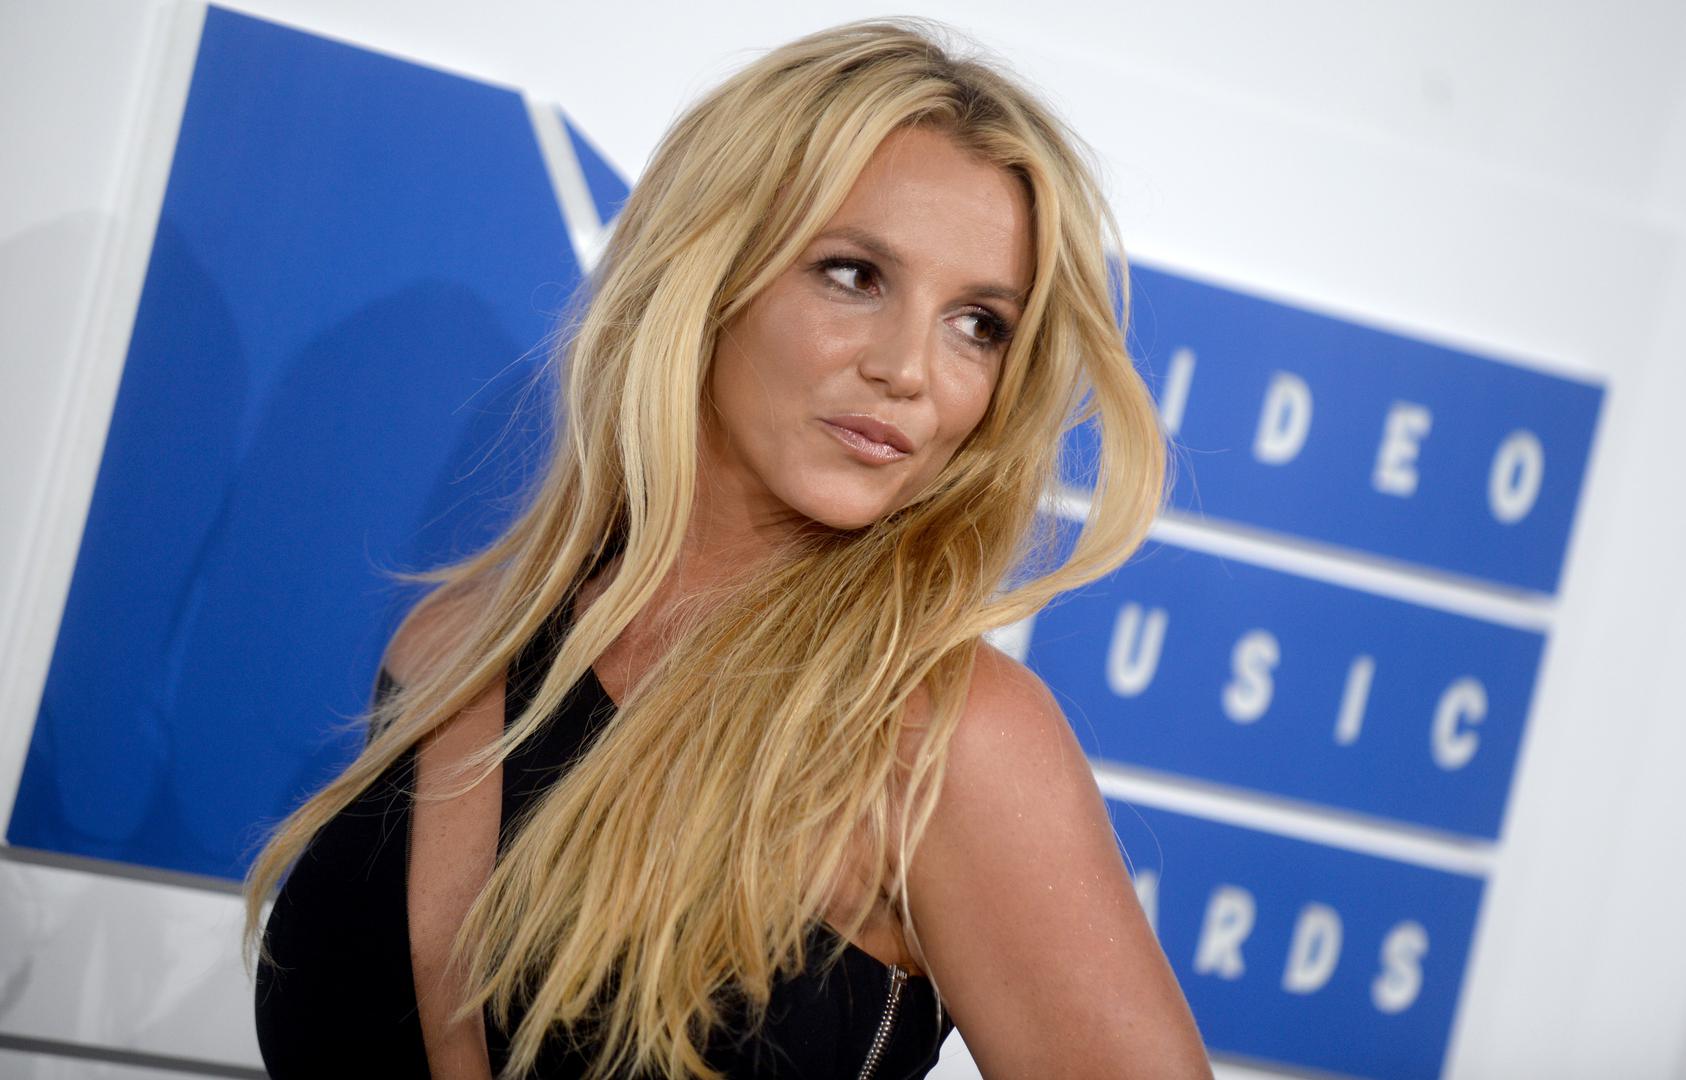 Kako se teško nositi s teretom slave pogotovo kad set u showbiznisu od tinejdžerskih dana najbolje pokazuje primjer Britney Spears koja je doživjela  živčani slom 2007. godine. te godine se prijavila na liječenje i ubrzo ga napustila, zatim je ispred svih obrijala glavu, snimljena je kako vozi automobil s djetetom u krilu što je rezultiralo time da su joj djeca bila i oduzeta na neko vrijeme. 